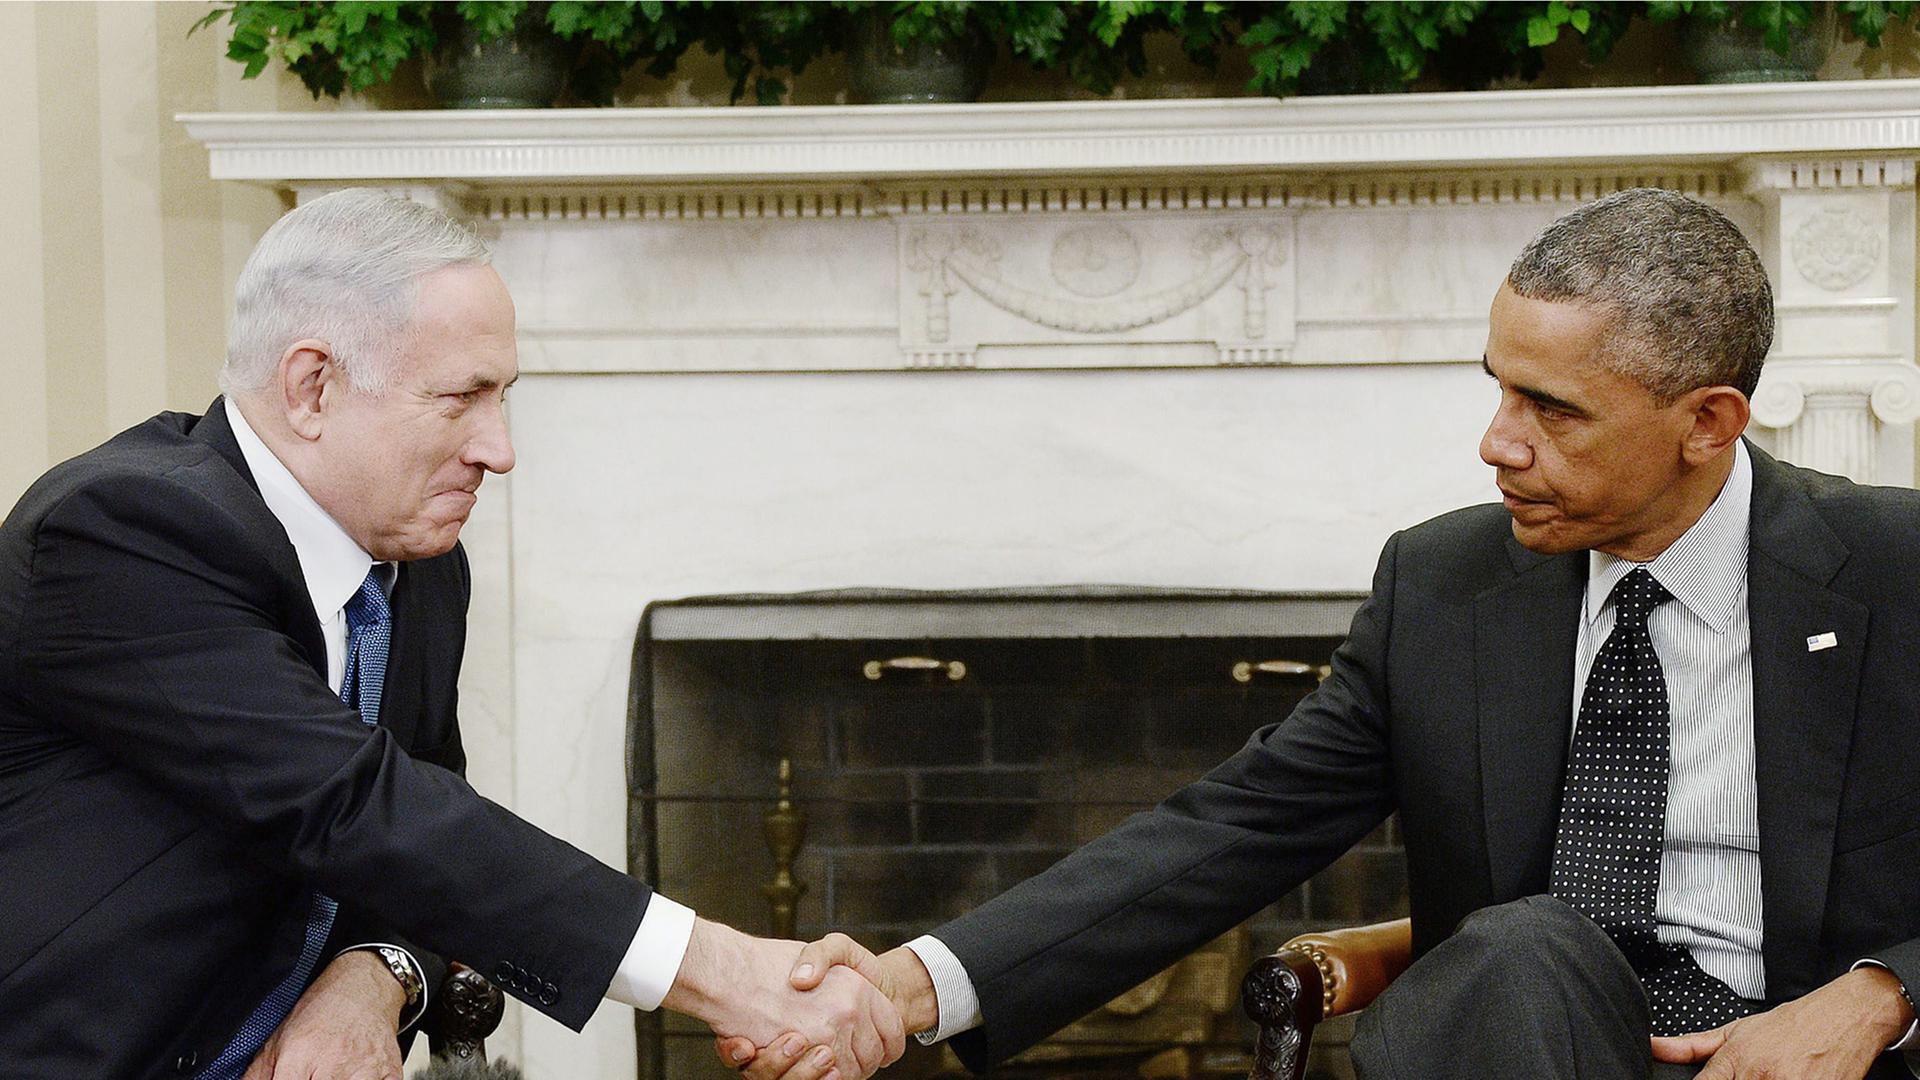 Der israelische Premierminister Netanjahu und US-Präsident Obama vor ihrem Gespräch im Weißen Haus. Sie schütteln sich die Hände.